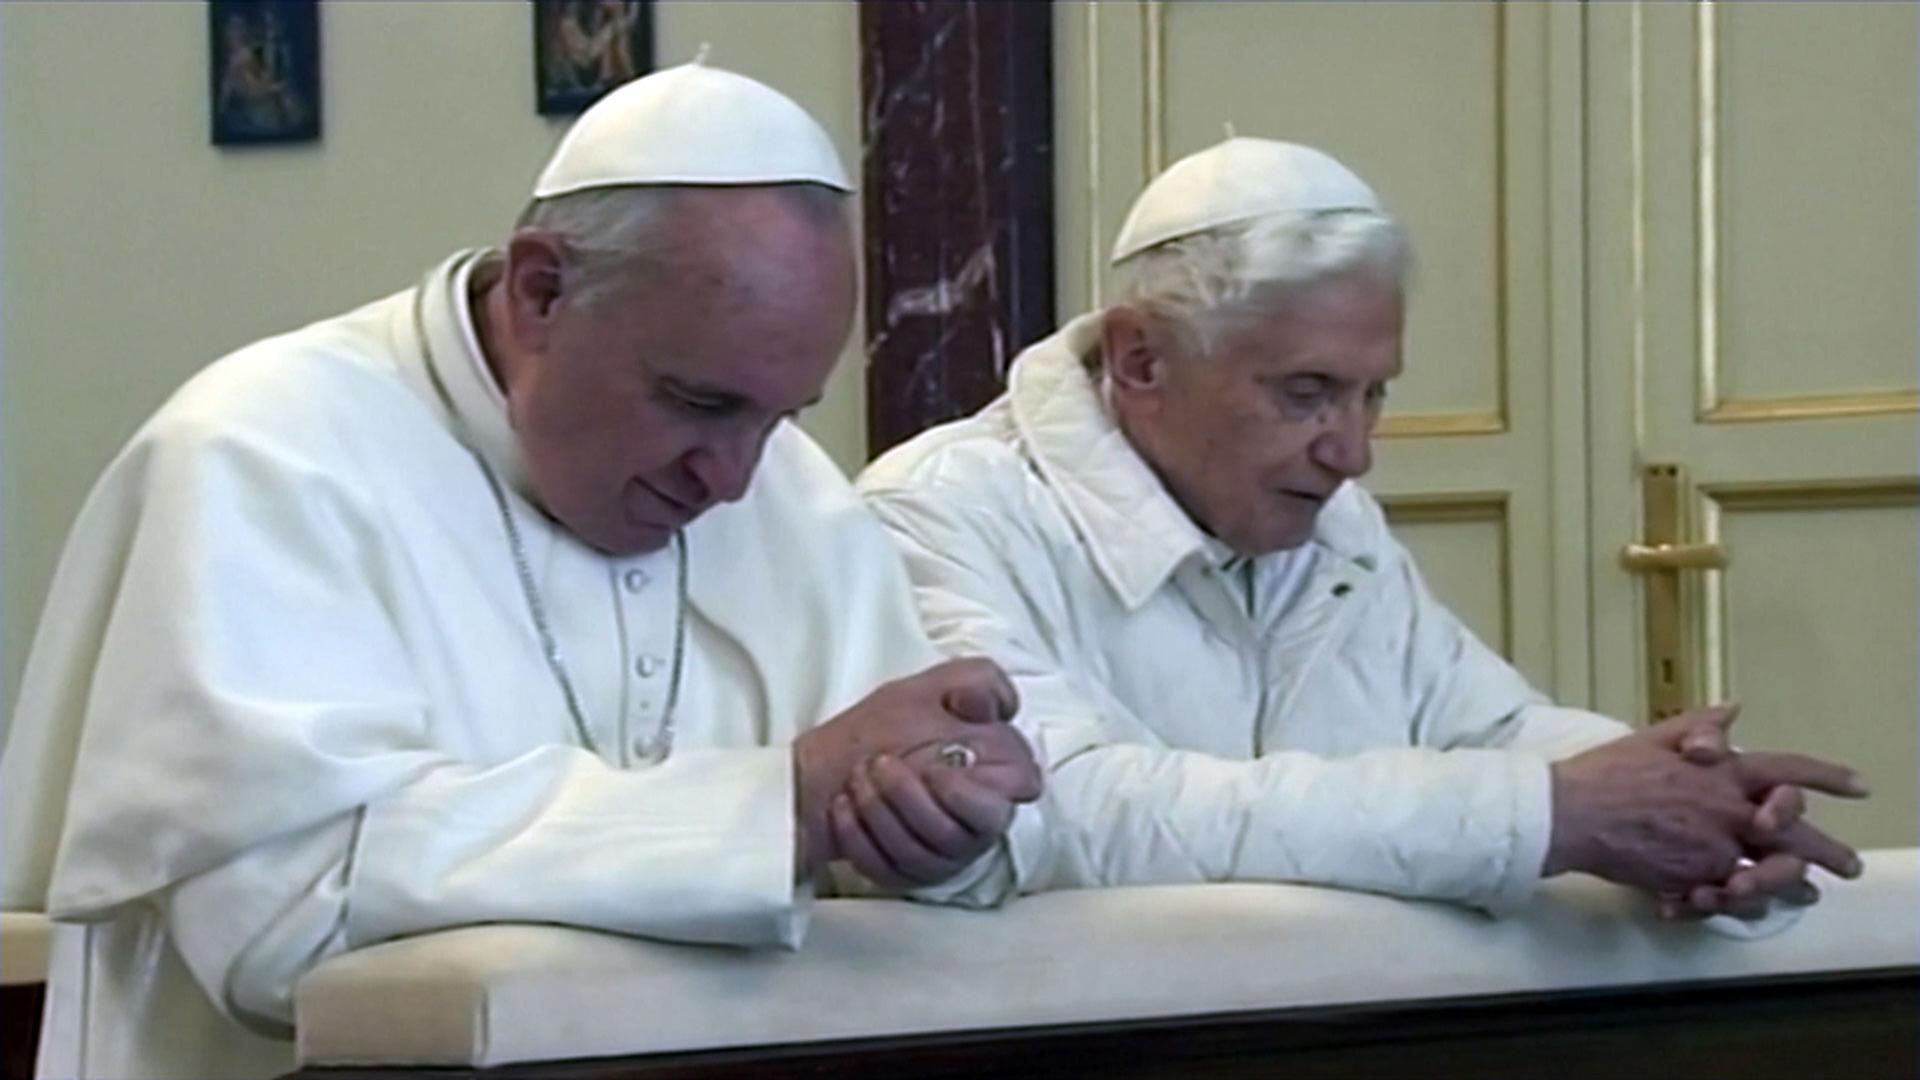 Papst Benedikt XVI. und Papst Franziskus kniend beim Gebet und haben beide weiße Gewänder an